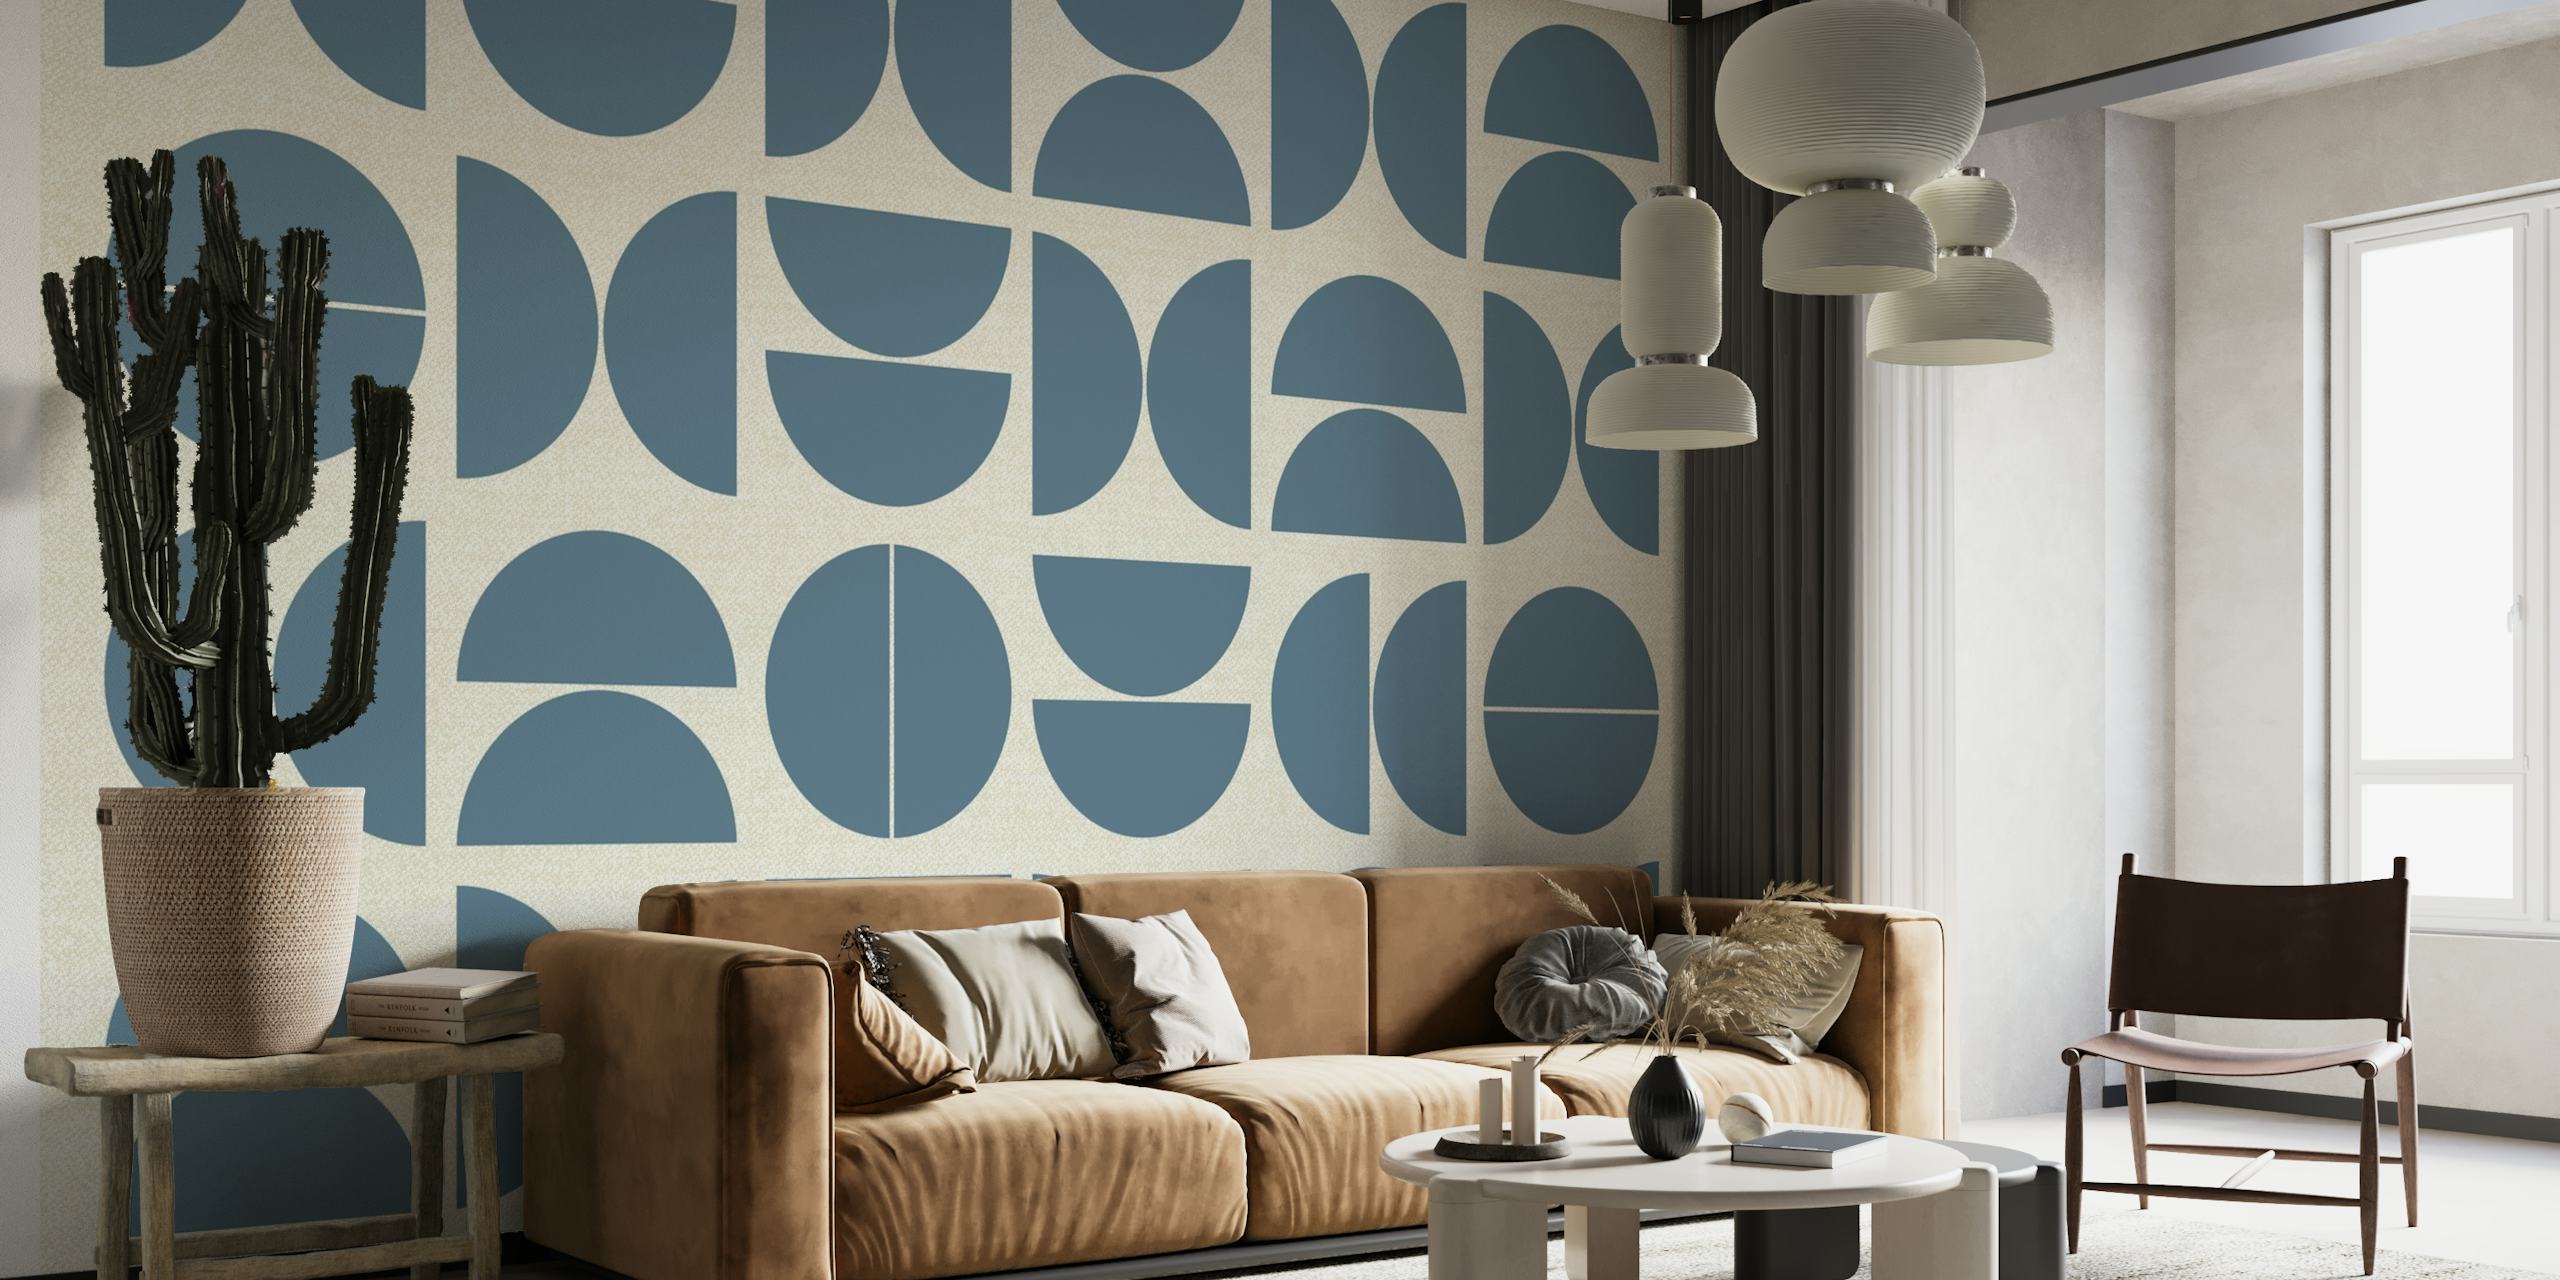 Abstract fotobehang in Bauhaus-stijl met geometrische cirkelvormige patronen in blauwtinten